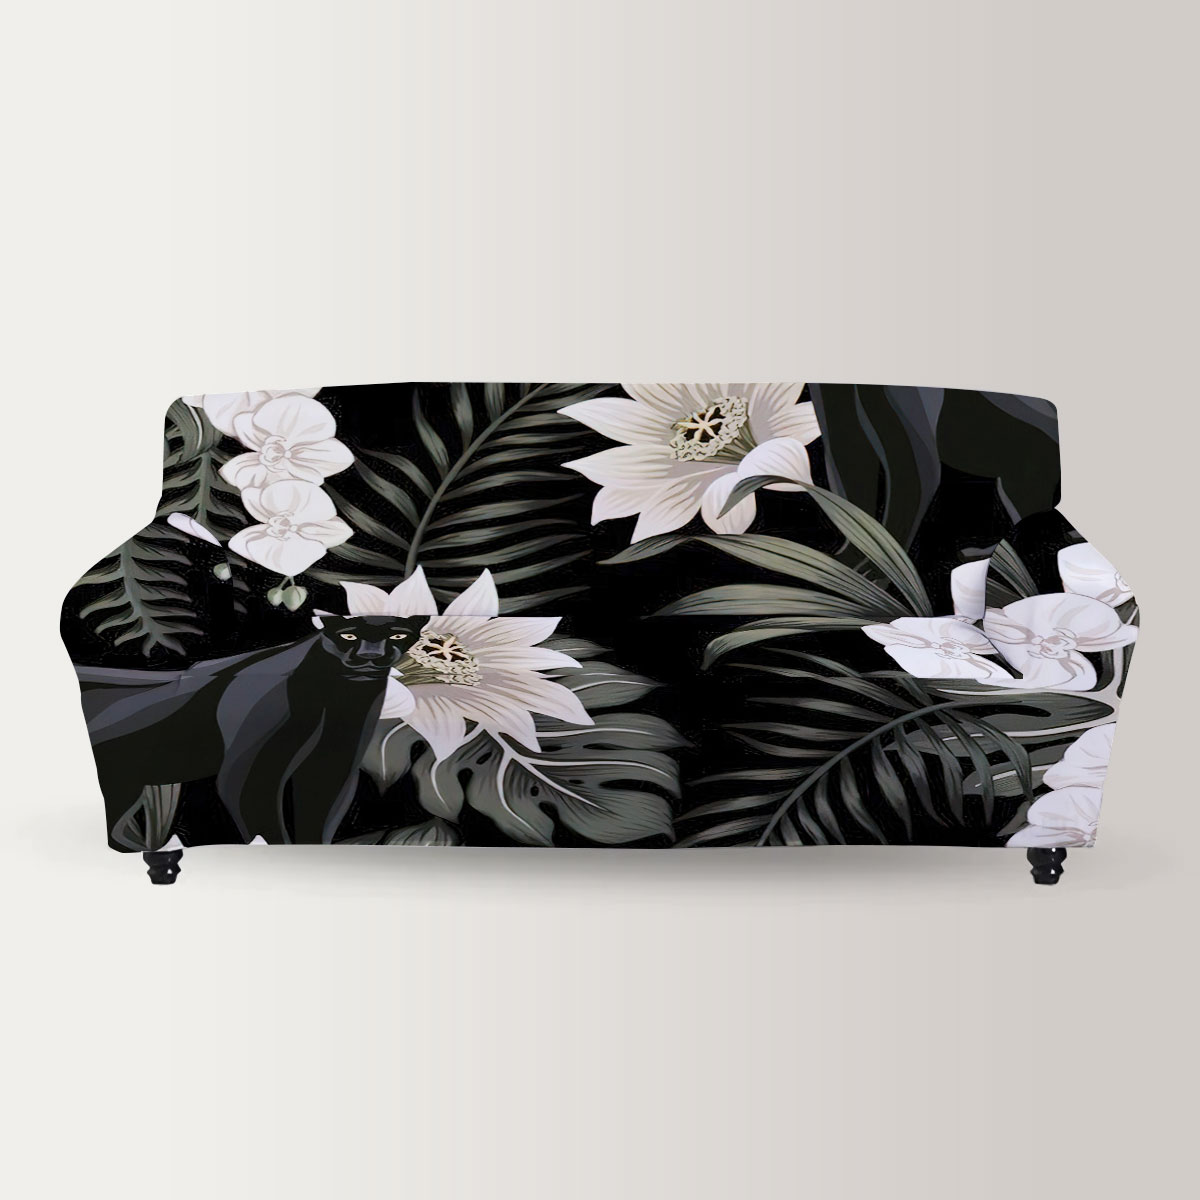 Vintage Floral Black Panther Sofa Cover